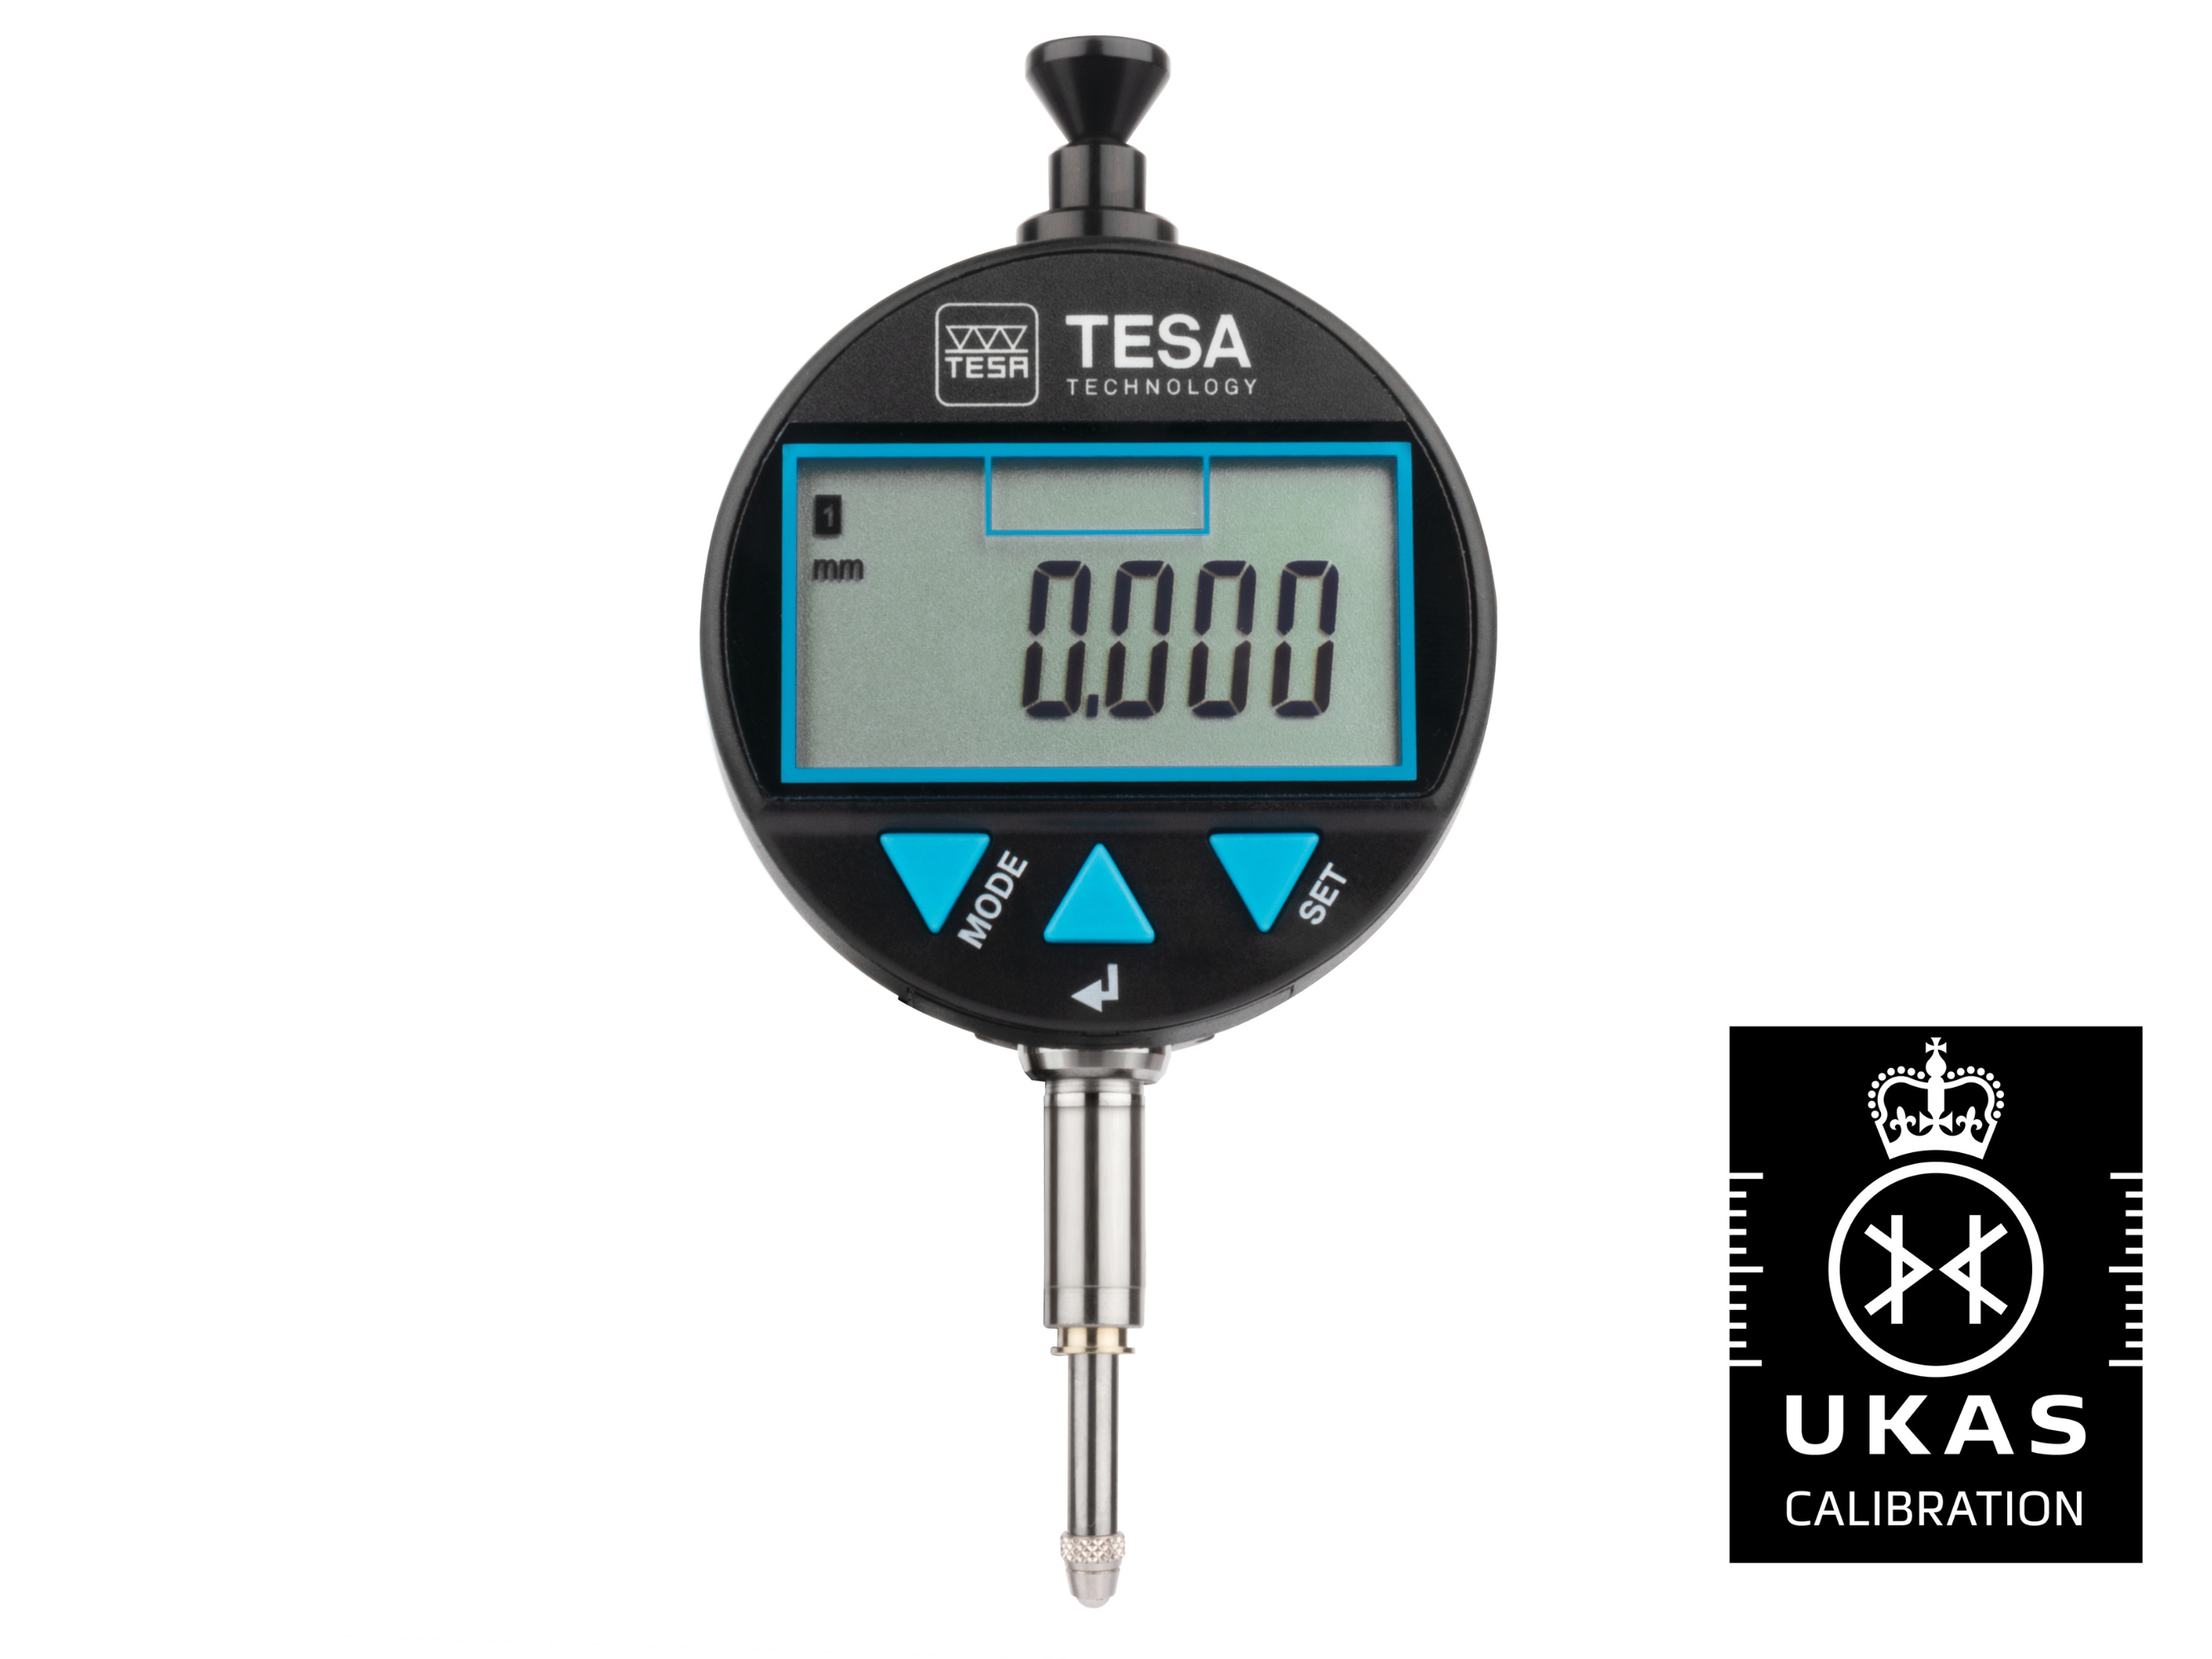 Tesa DIALTRONIC Digital Dial Gauge 12.5mm 0.001mm IP54 01930301 with UKAS Calibration